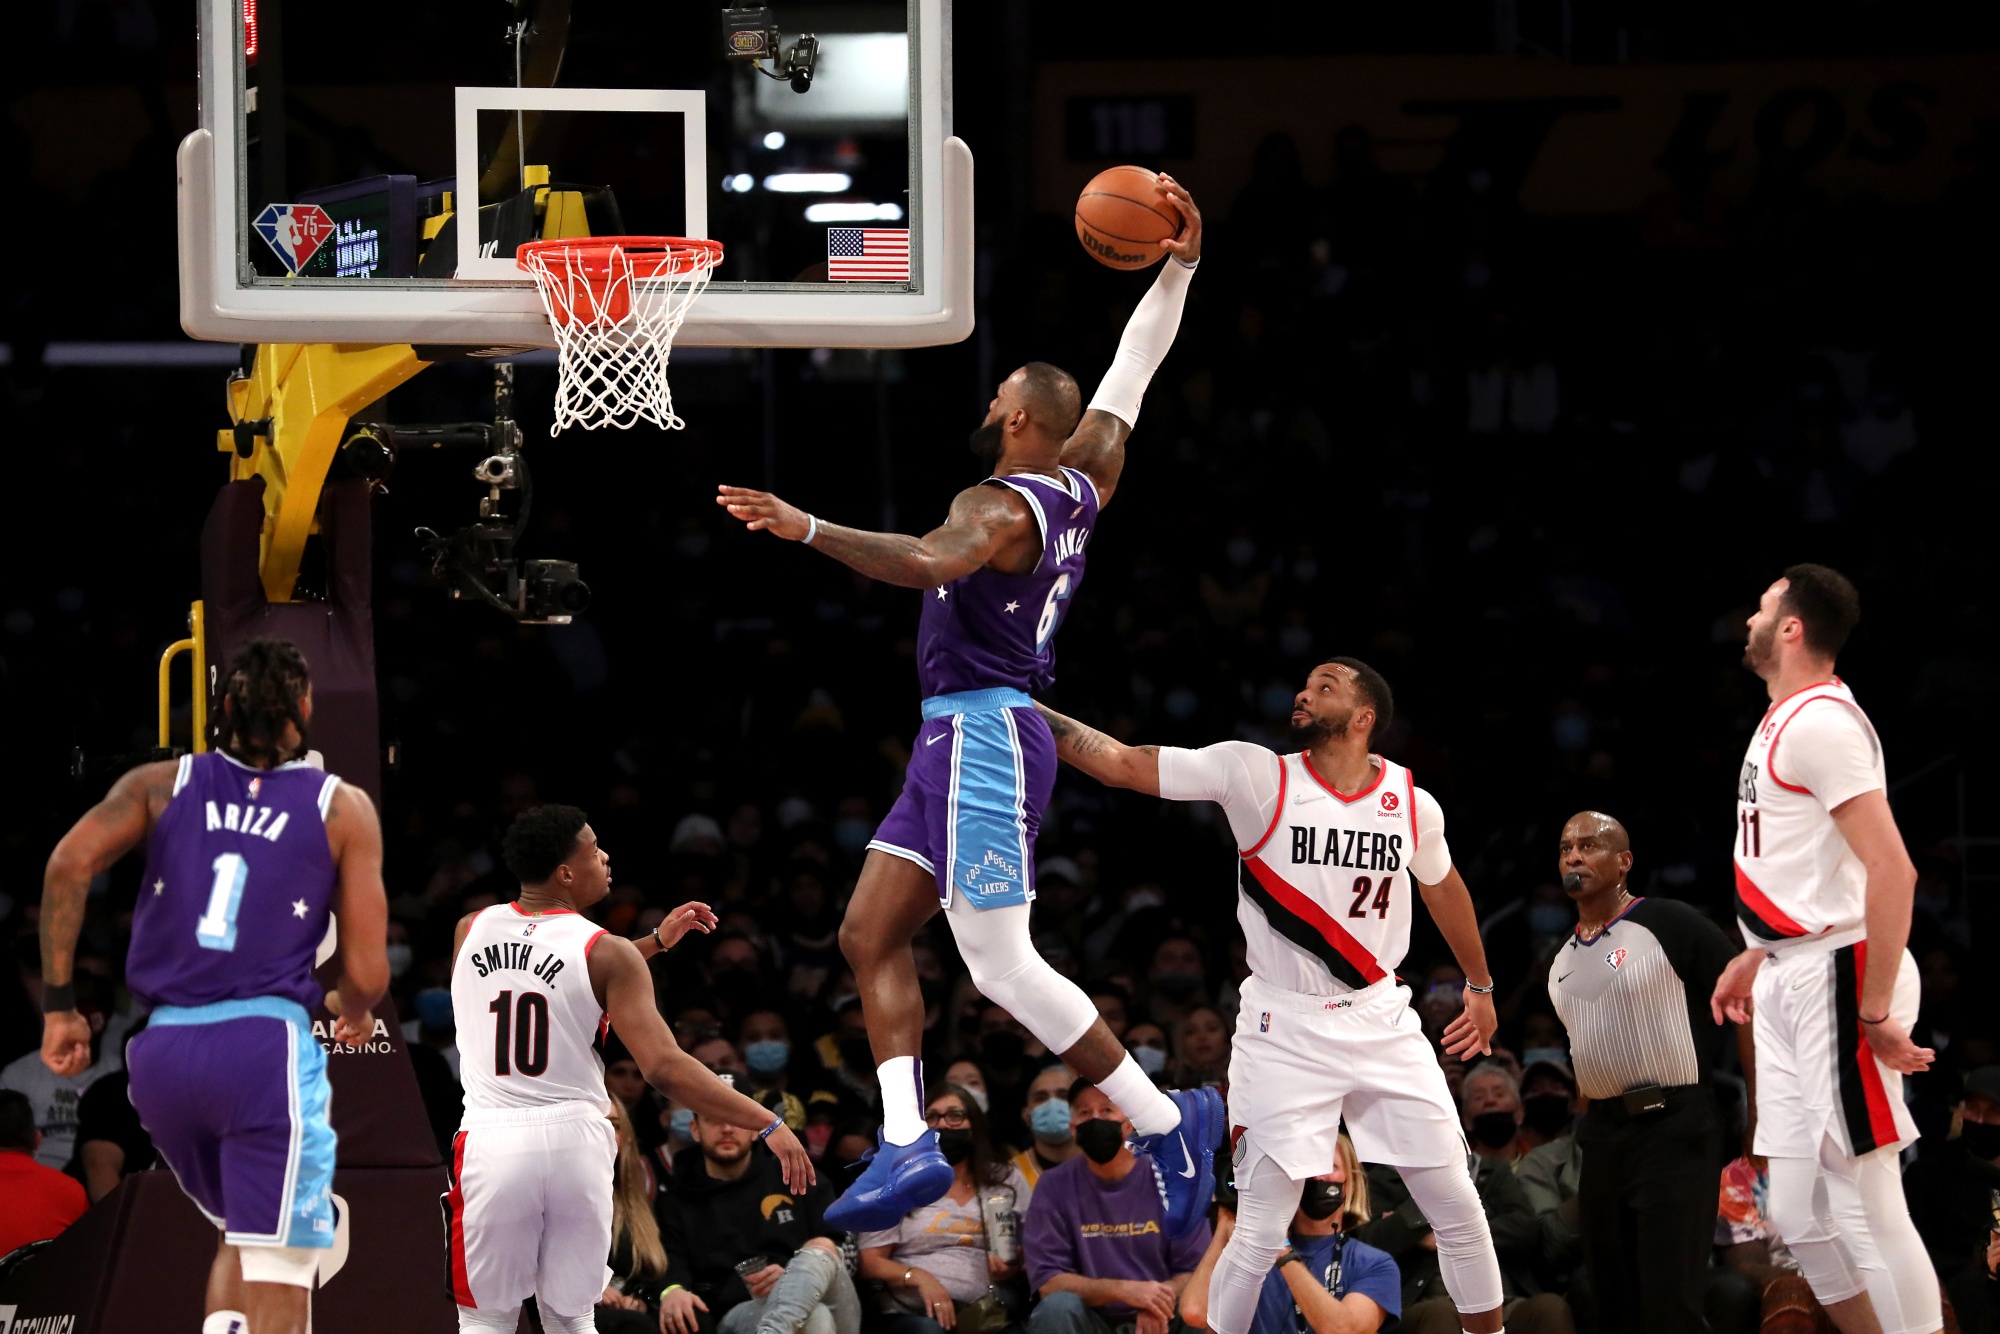 NBA: James scores season-high 43, Lakers beat Trail Blazers